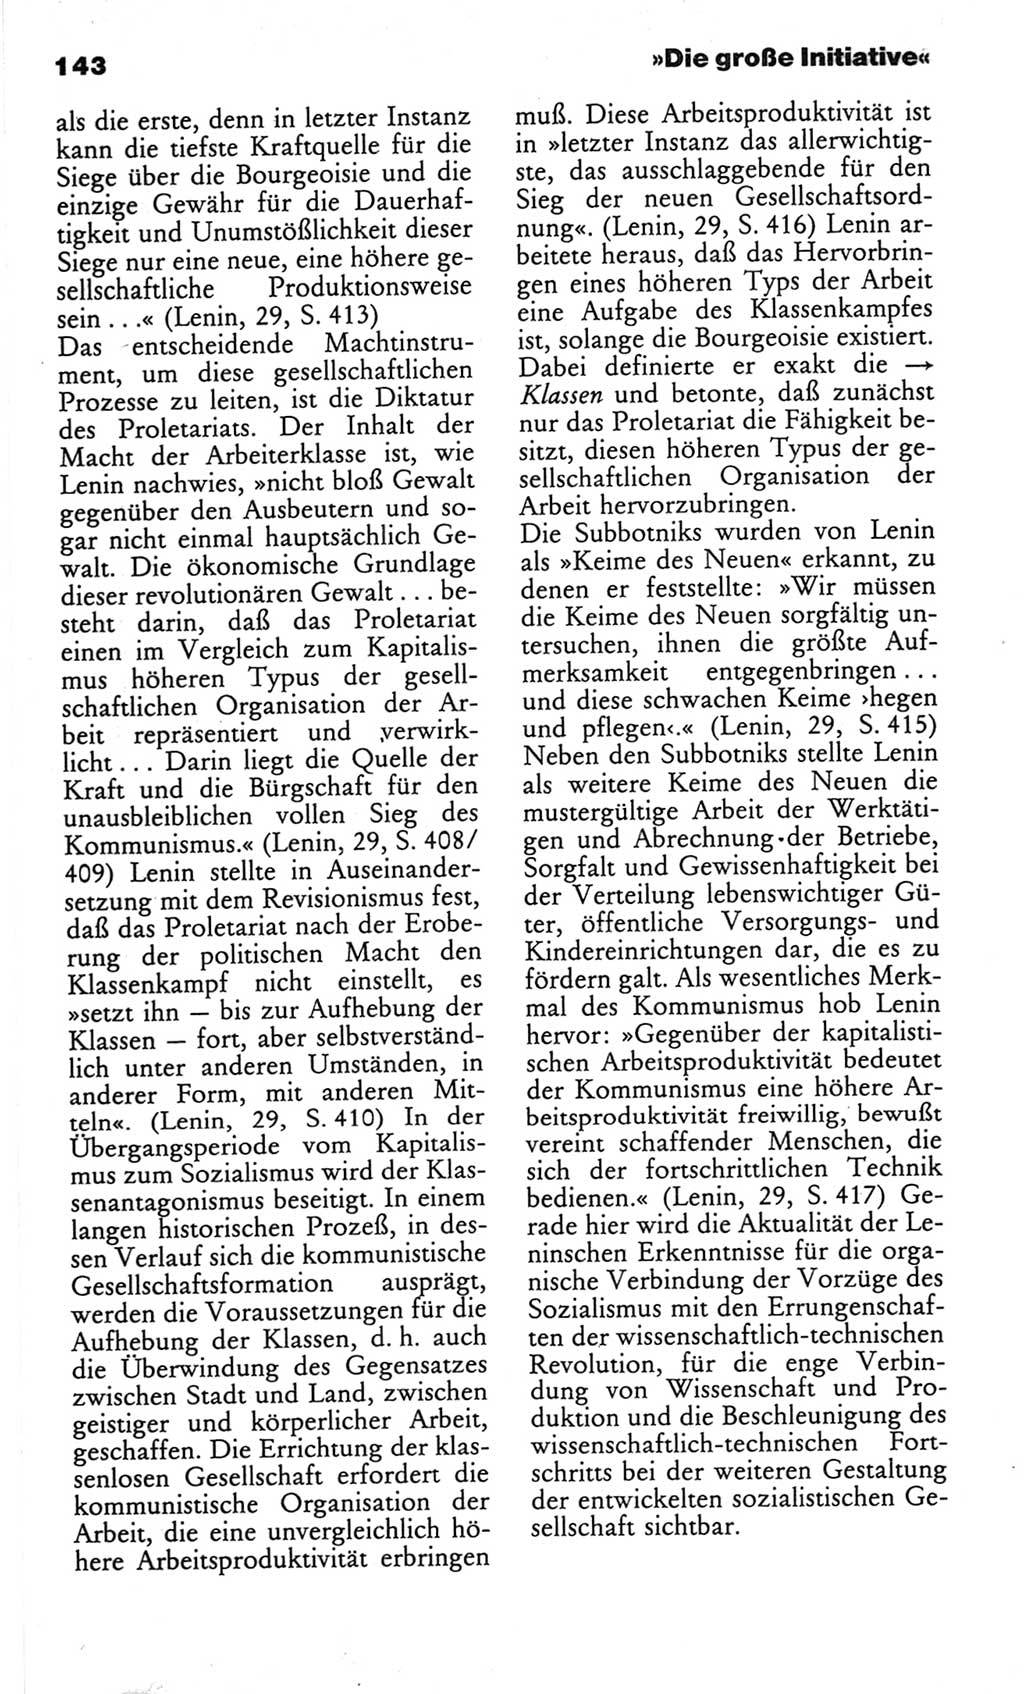 Wörterbuch des wissenschaftlichen Kommunismus [Deutsche Demokratische Republik (DDR)] 1982, Seite 143 (Wb. wiss. Komm. DDR 1982, S. 143)